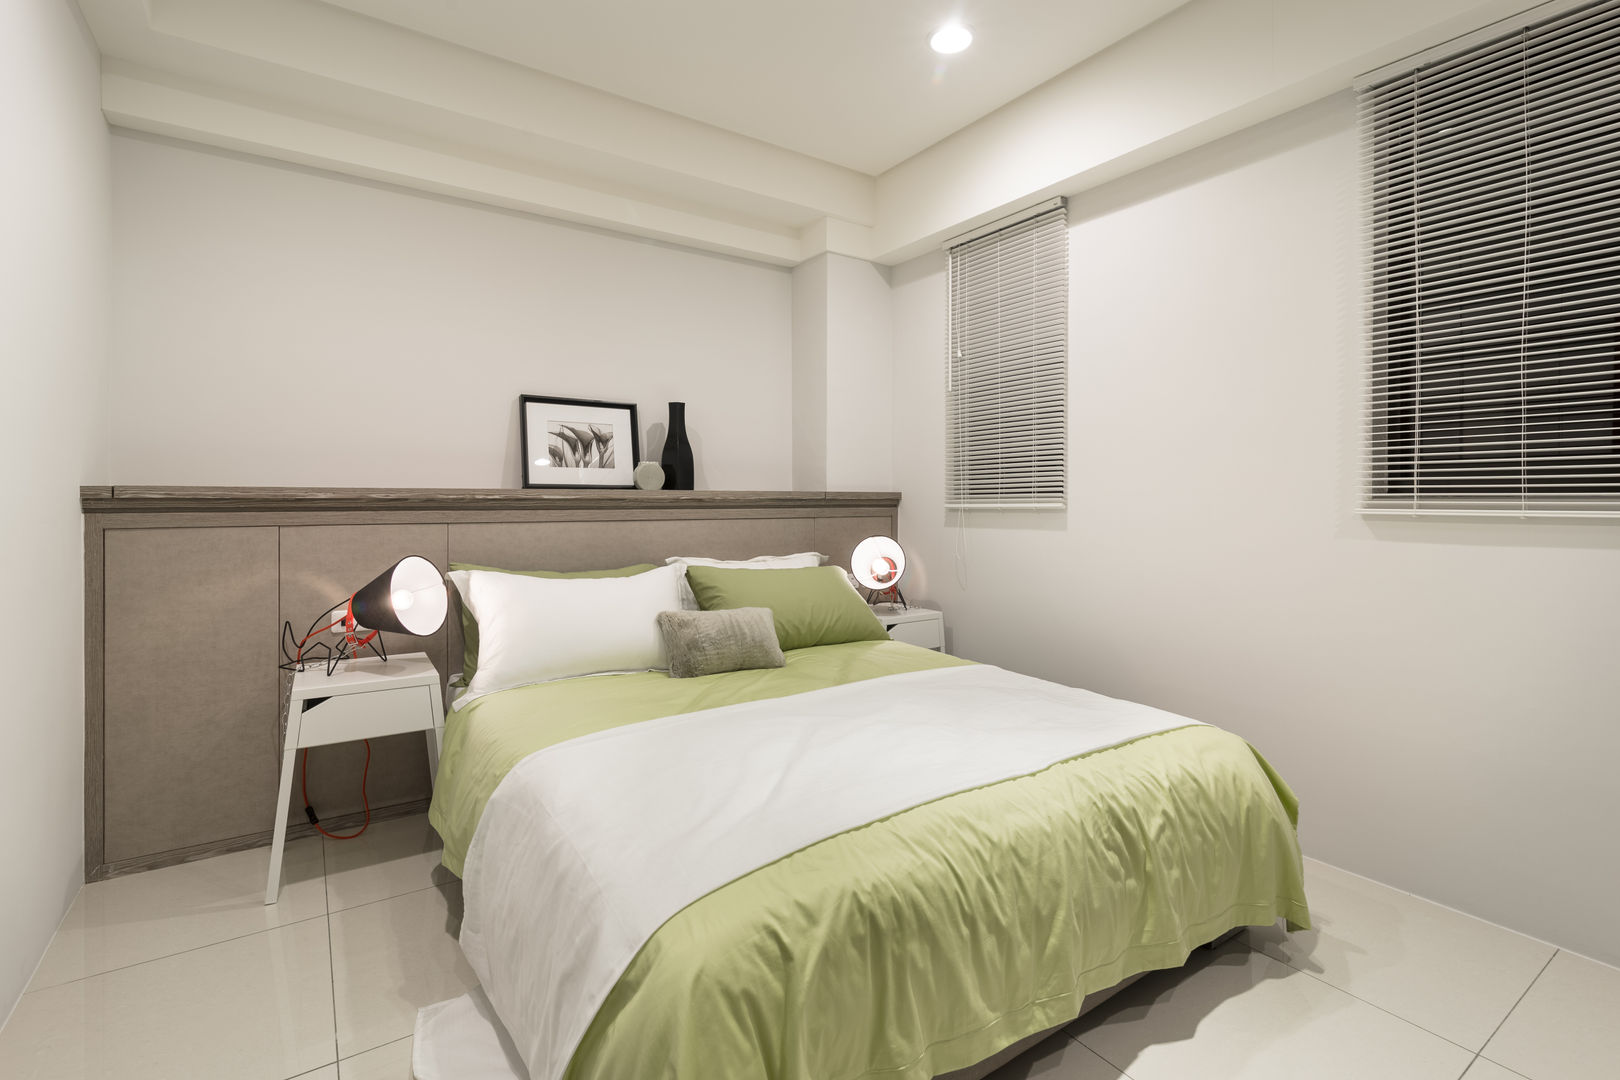 簡約 / 都會風, 騰龘空間設計有限公司 騰龘空間設計有限公司 Modern style bedroom